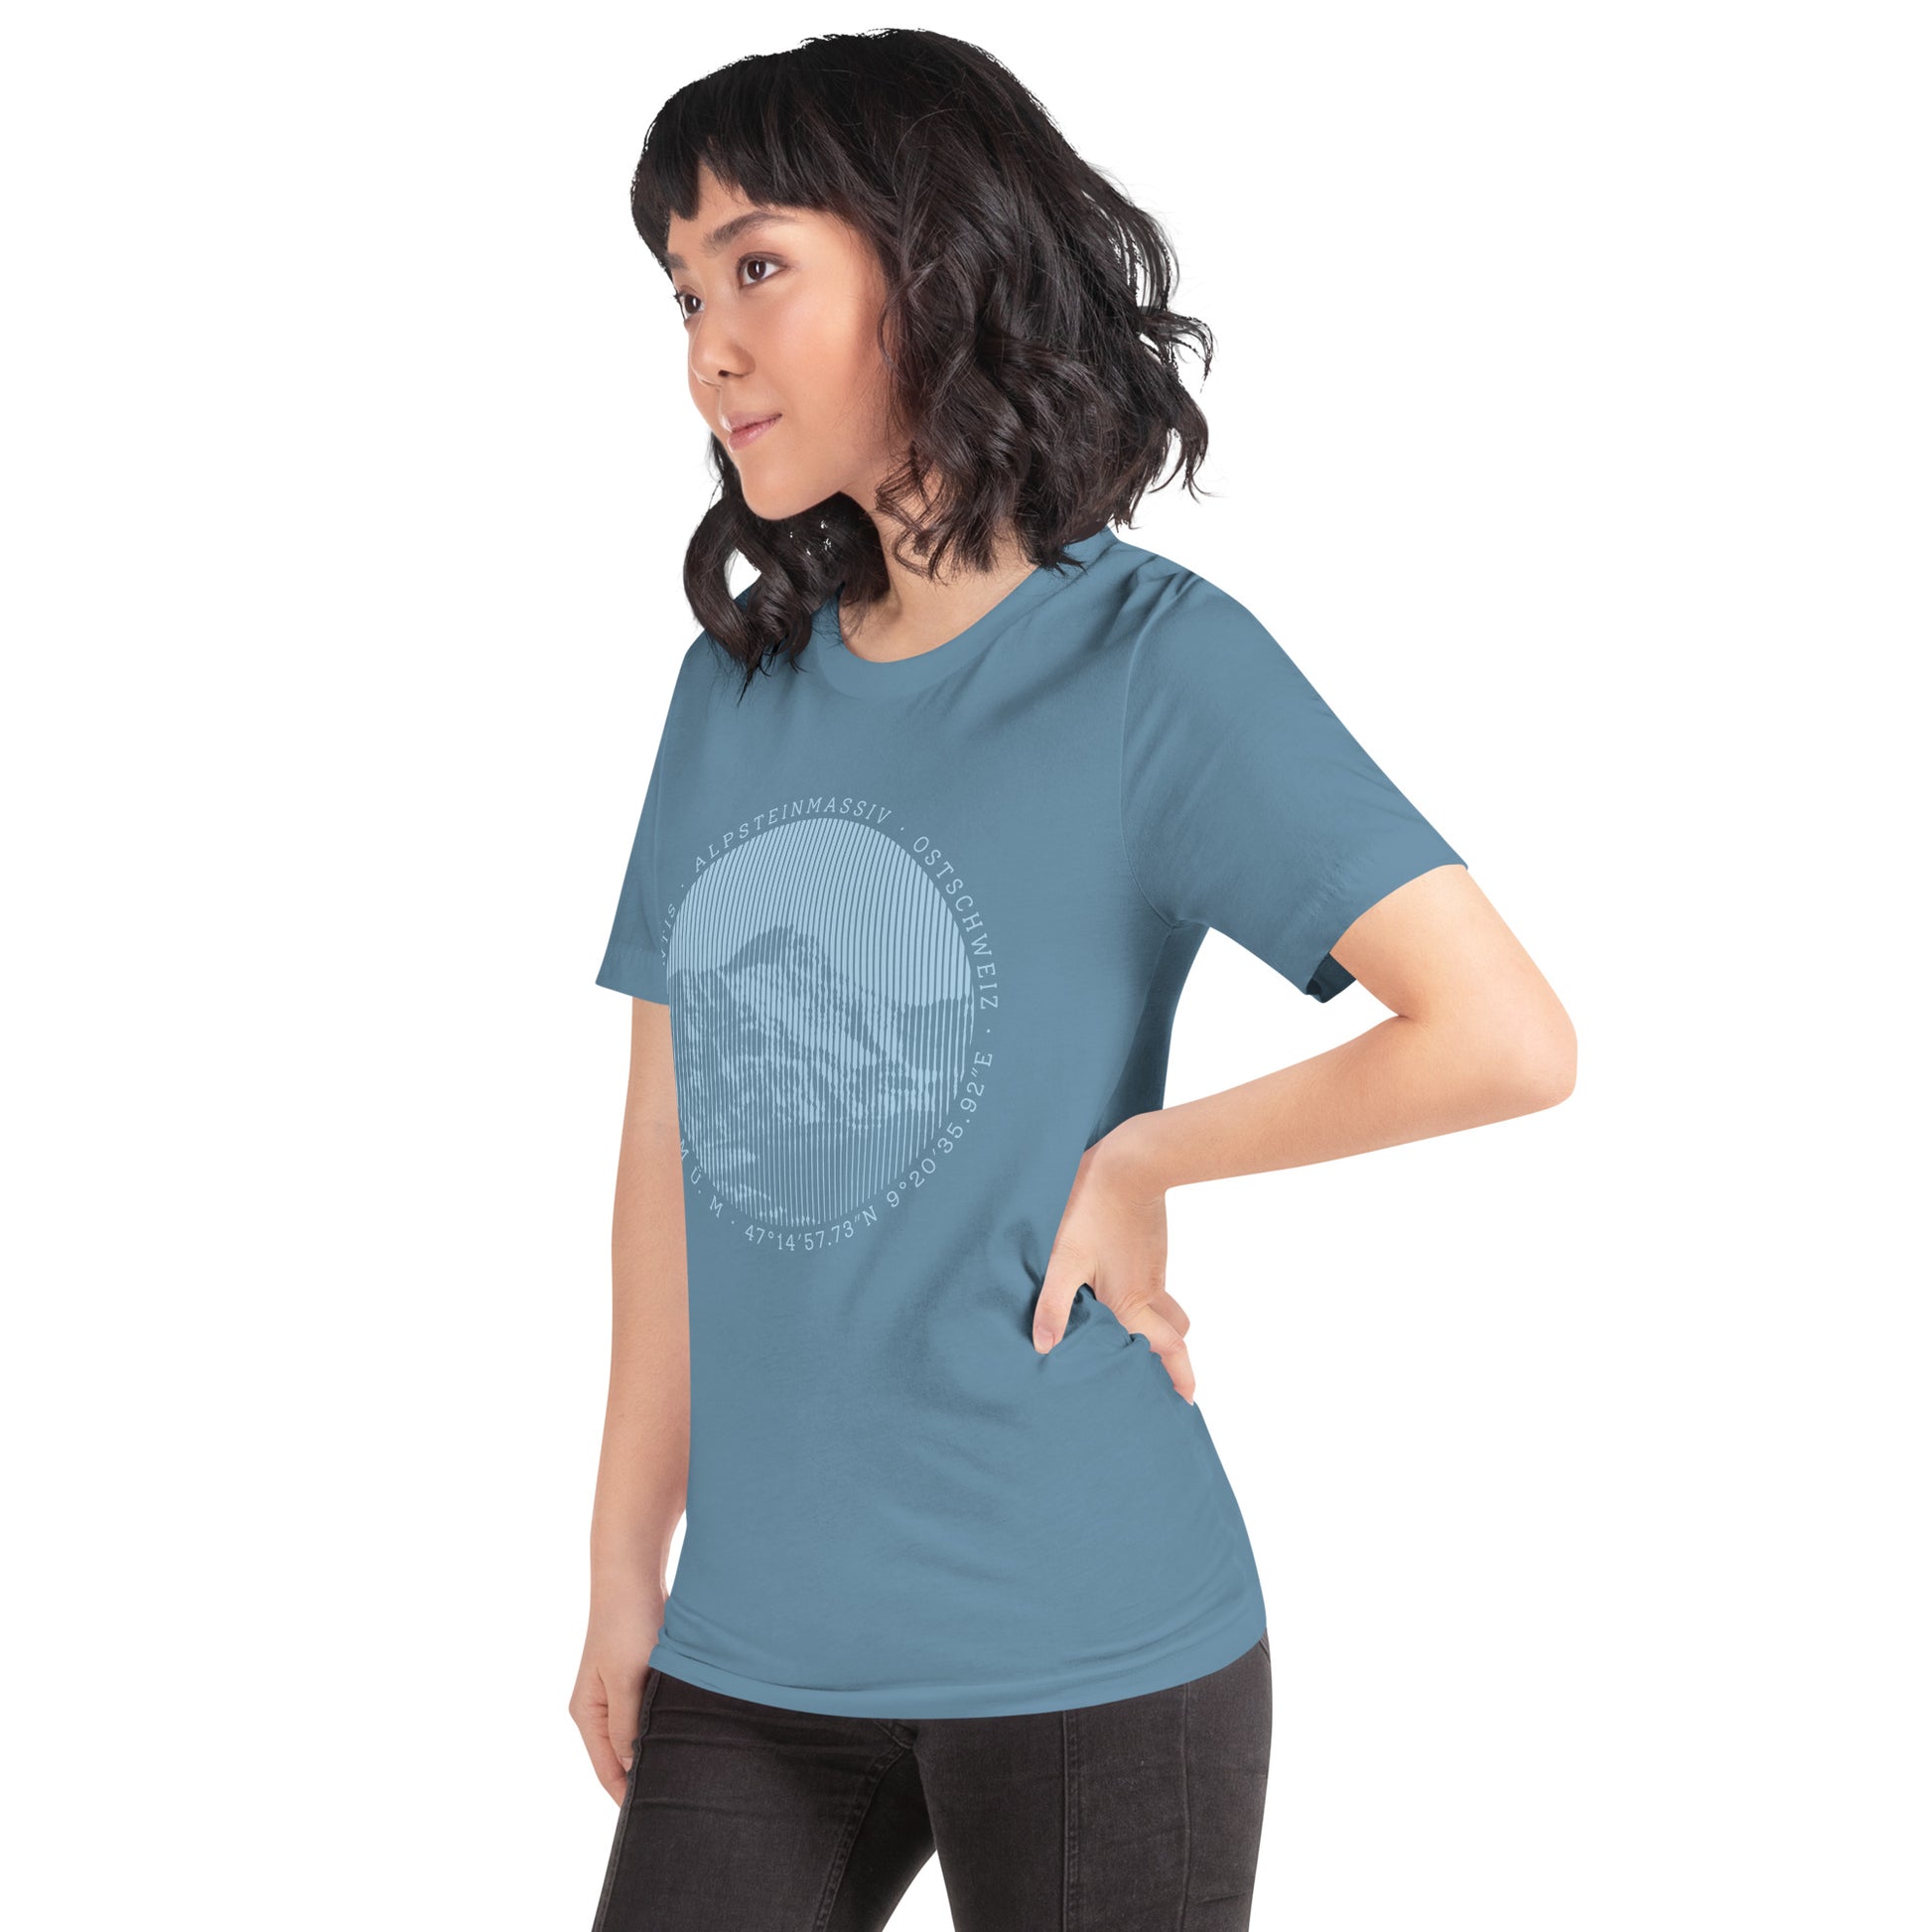 Diese Naturfreundin trägt ein stahlblaues Damen T-Shirt von Vallada mit einem Aufdruck des Säntis-Gipfels. Dieses T-Shirt ist ein Ausdruck ihres Enthusiasmus für die Region des Alpsteins.